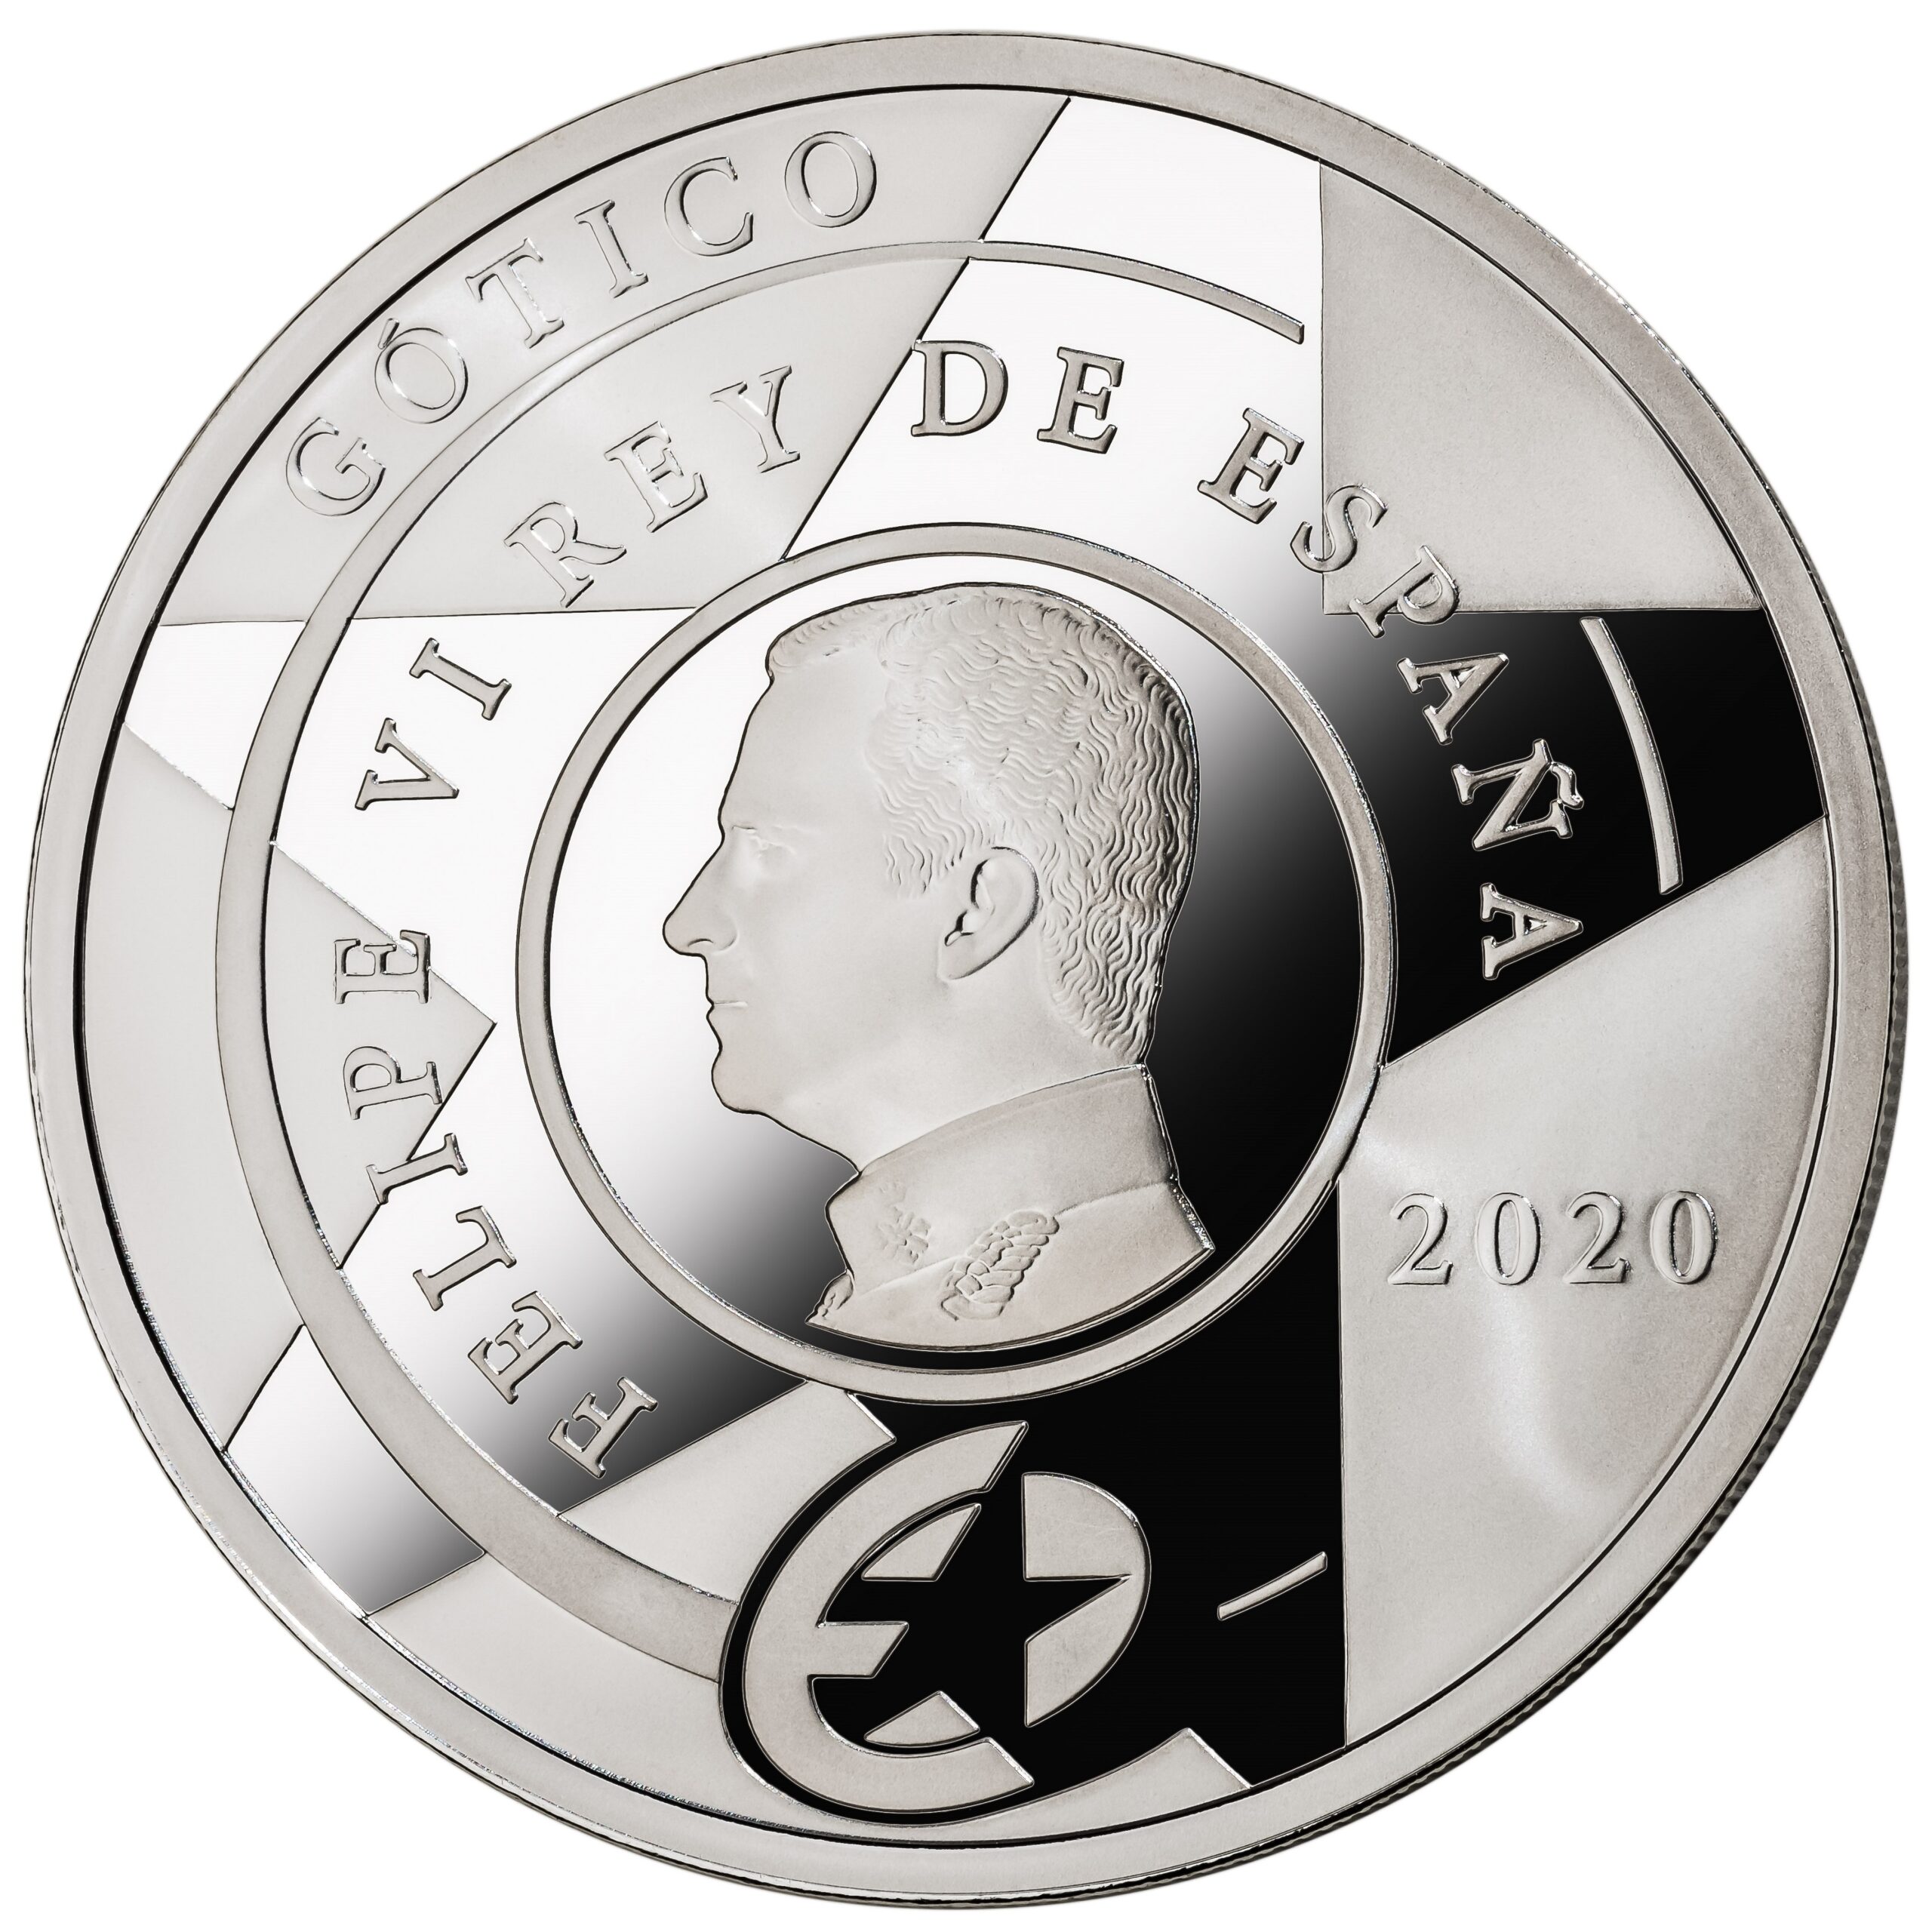 ES 10 Euro 2020 Real Casa de la Moneda logo